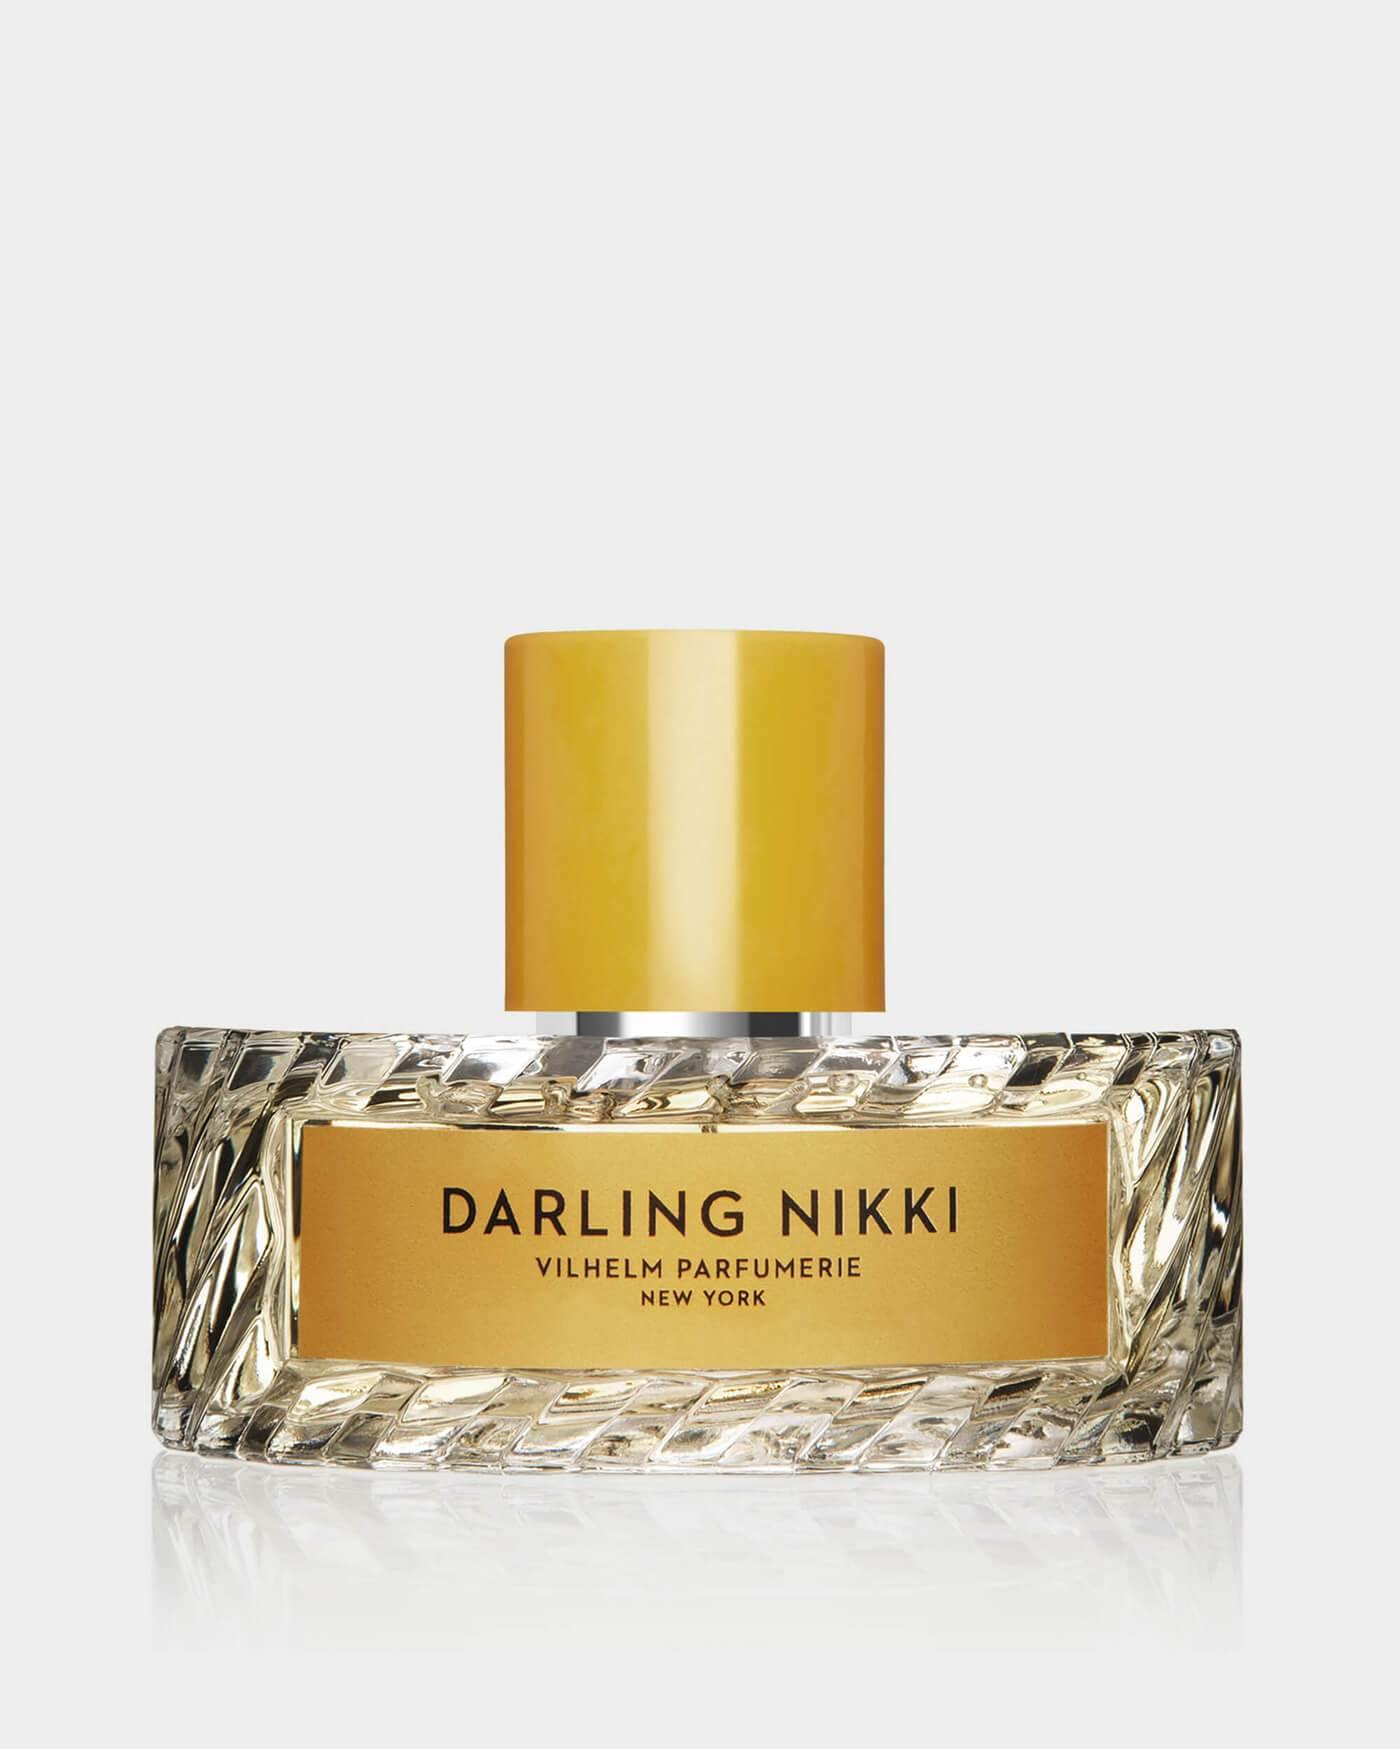 DARLING NIKKI - Vilhelm Parfumerie